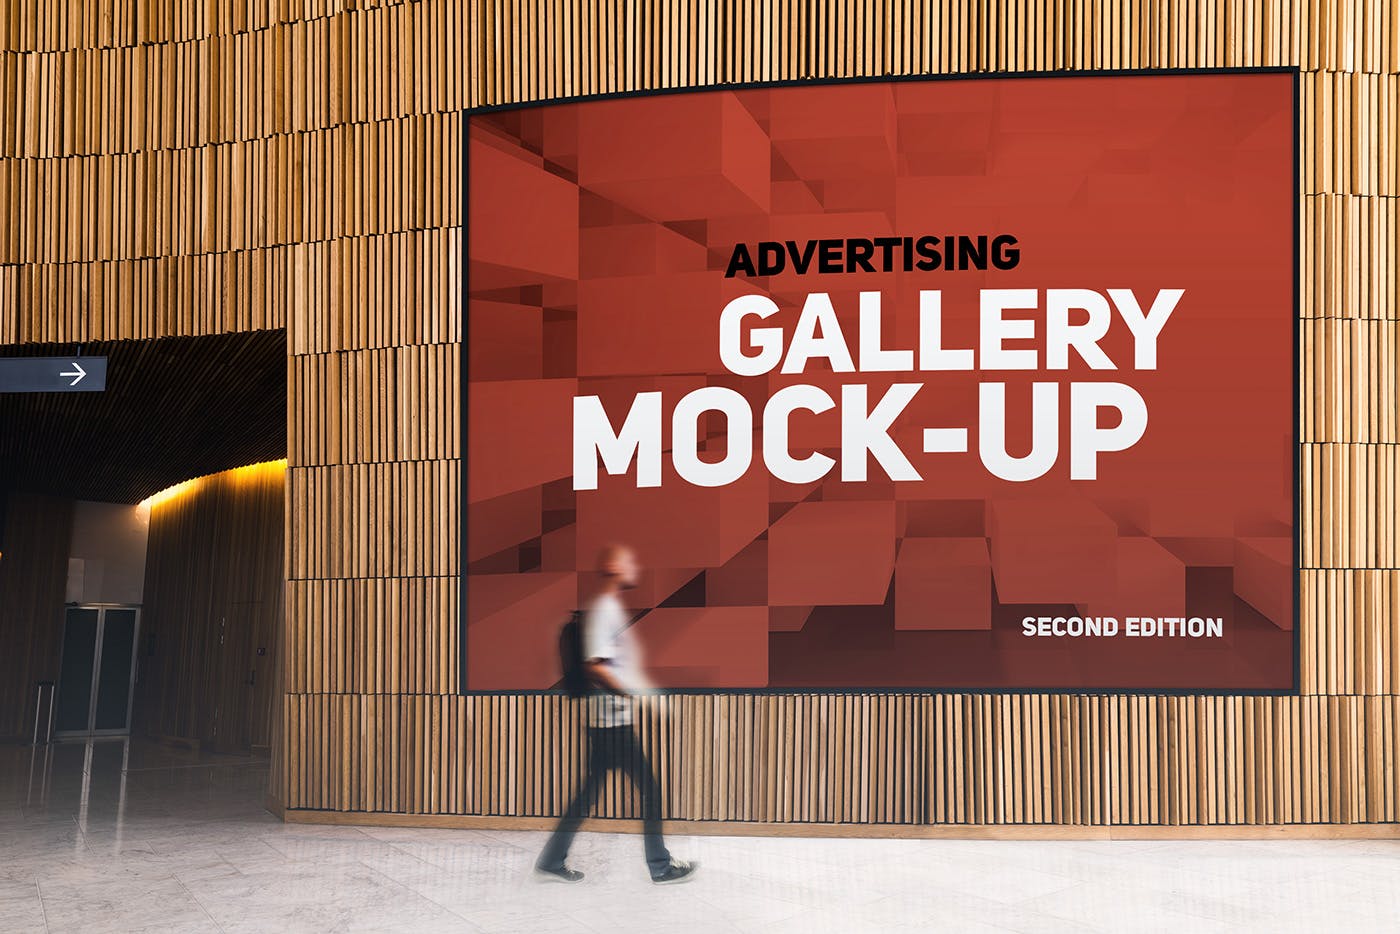 展厅画廊巨幅海报设计图样机非凡图库精选模板v3 Gallery Poster Mockup v.3插图(8)